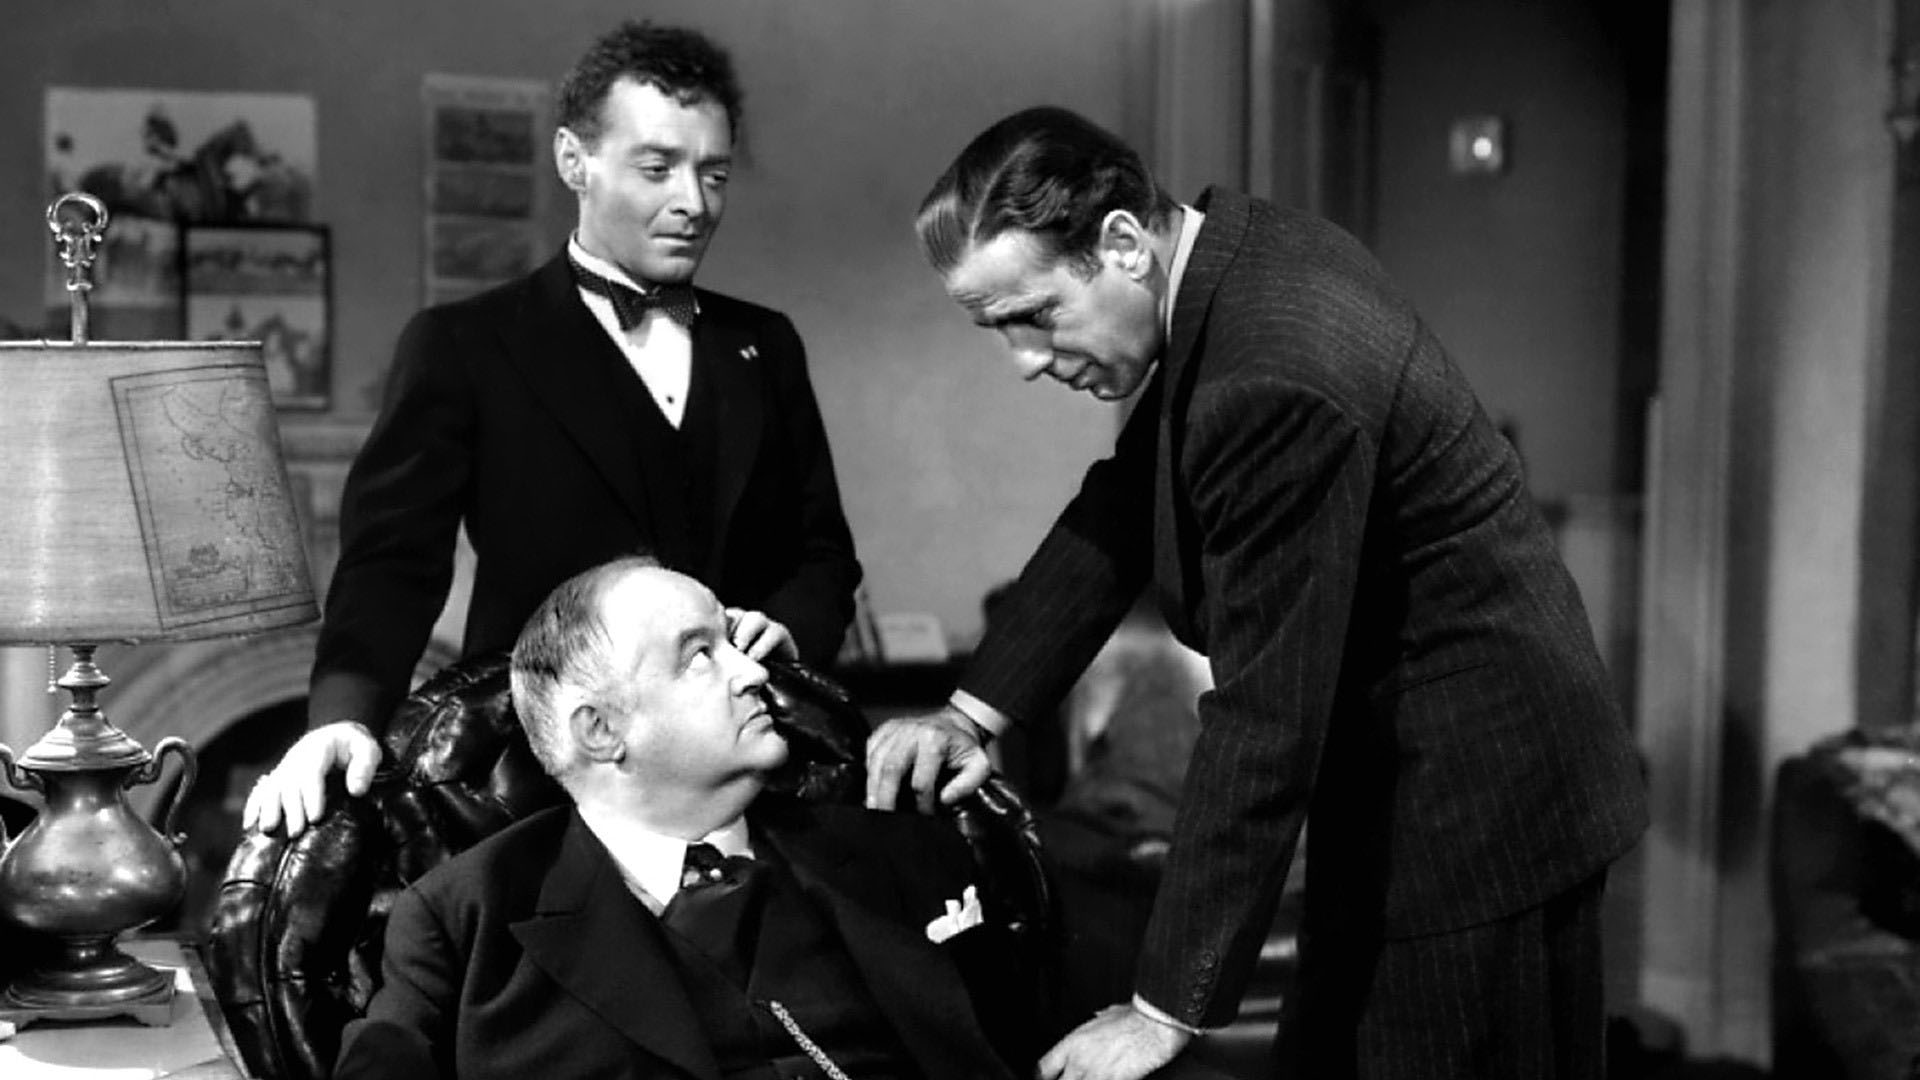 A scene from The Maltese Falcon